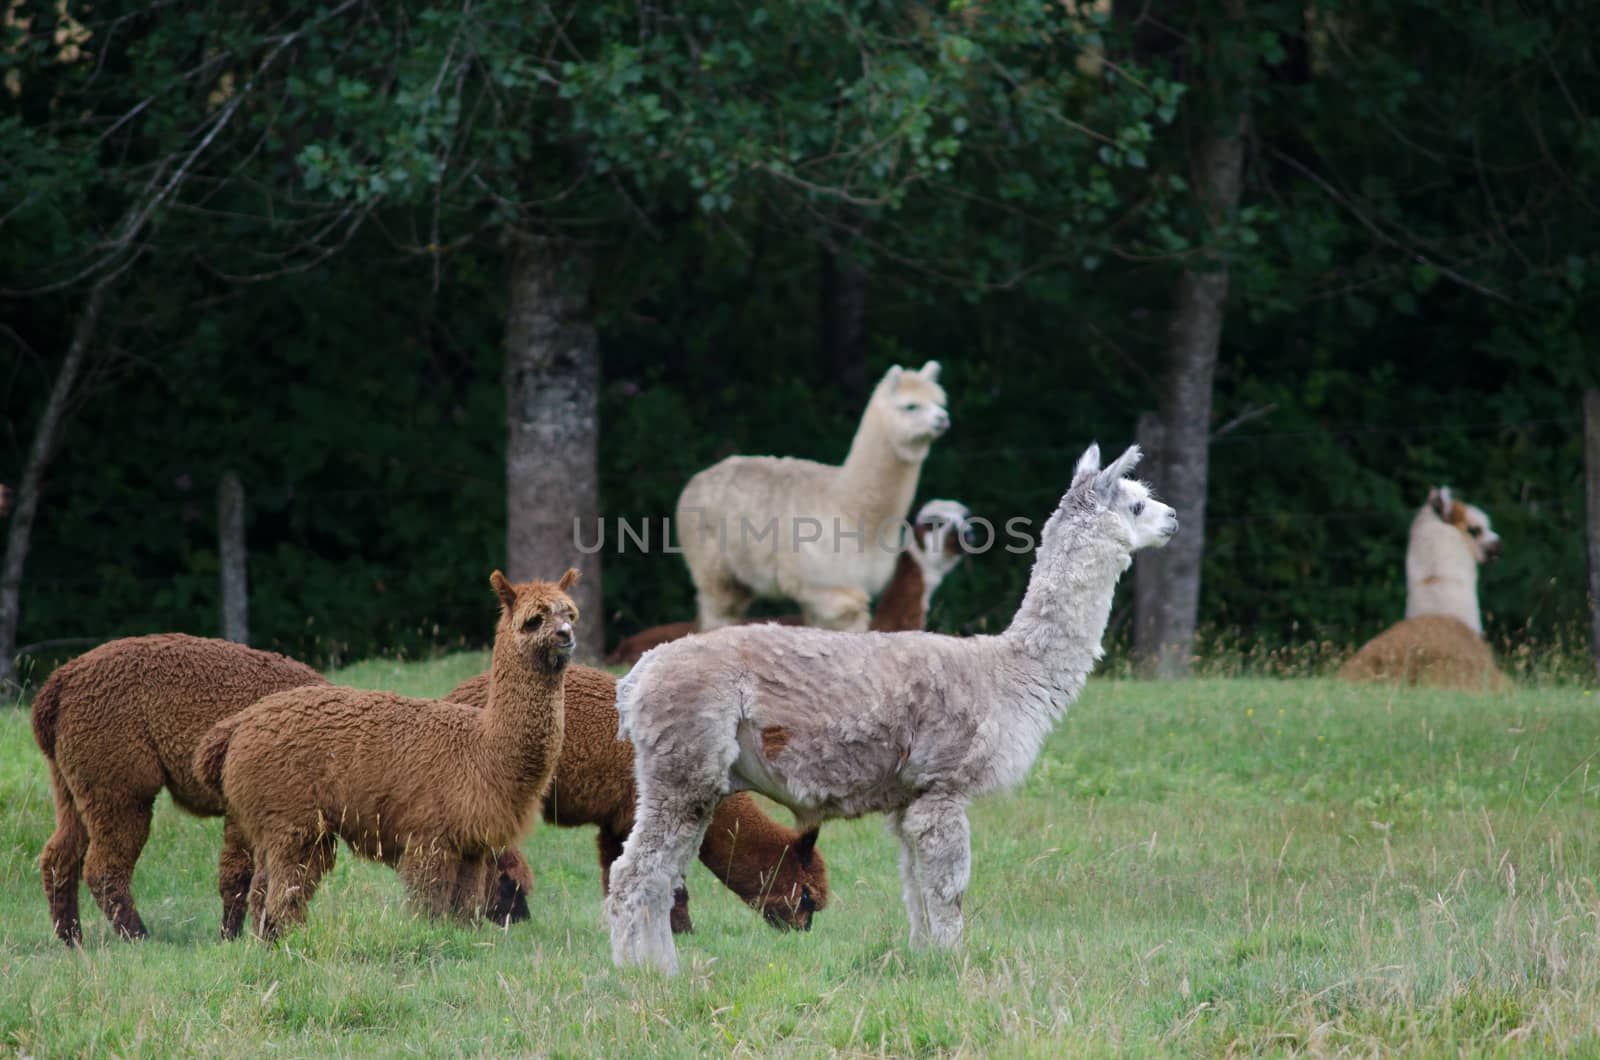 Herd of alpacas Vicugna pacos. Araucania Region. Chile.